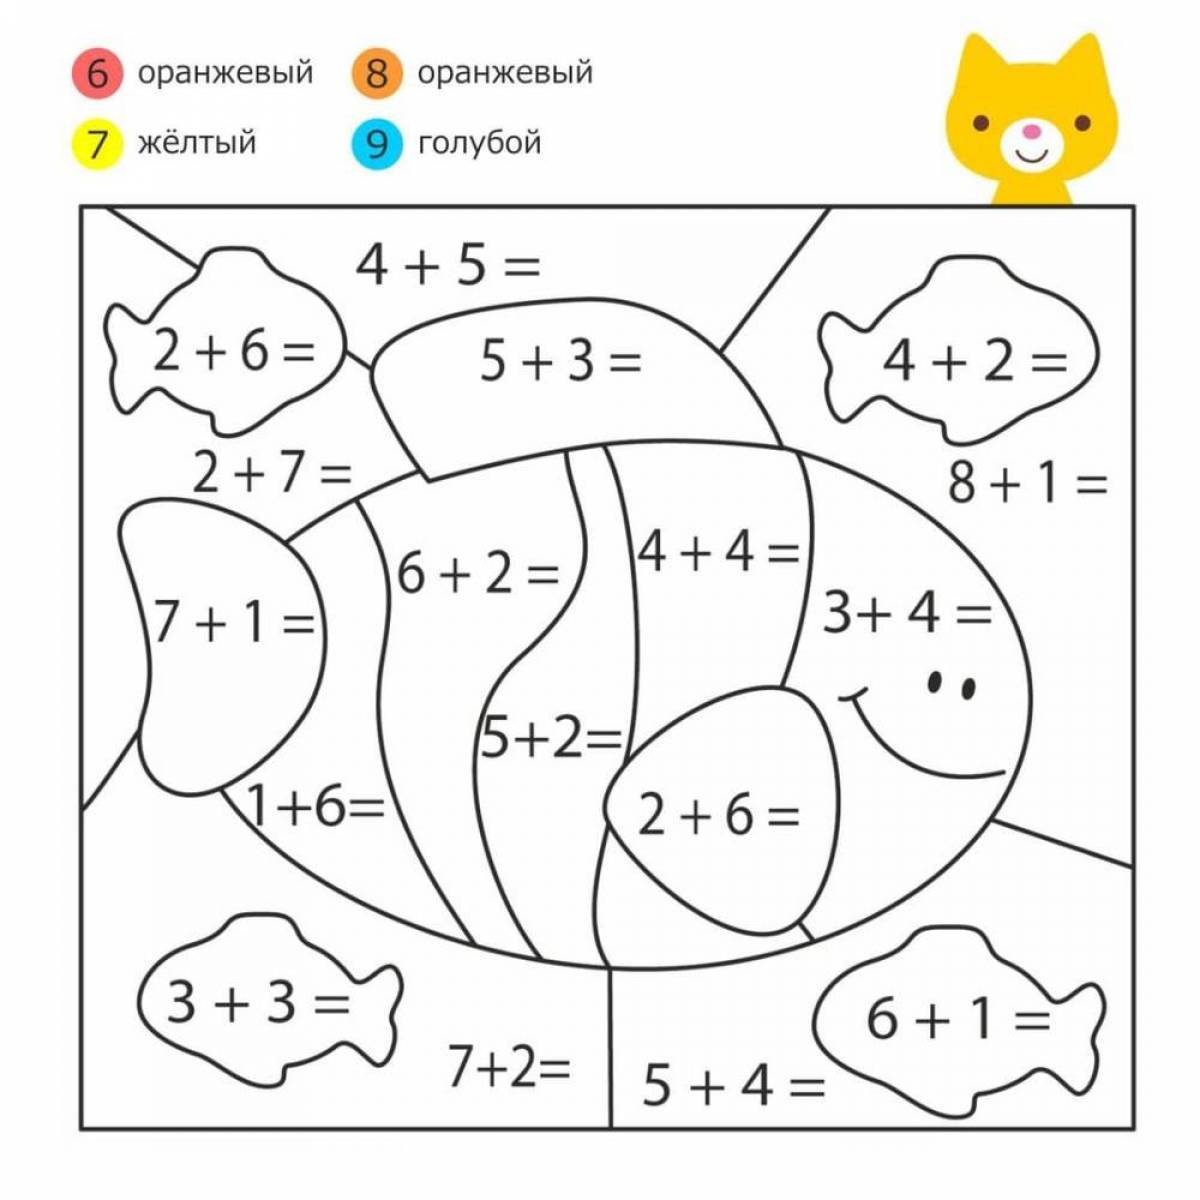 Образовательная математическая раскраска для дошкольников 6-7 лет